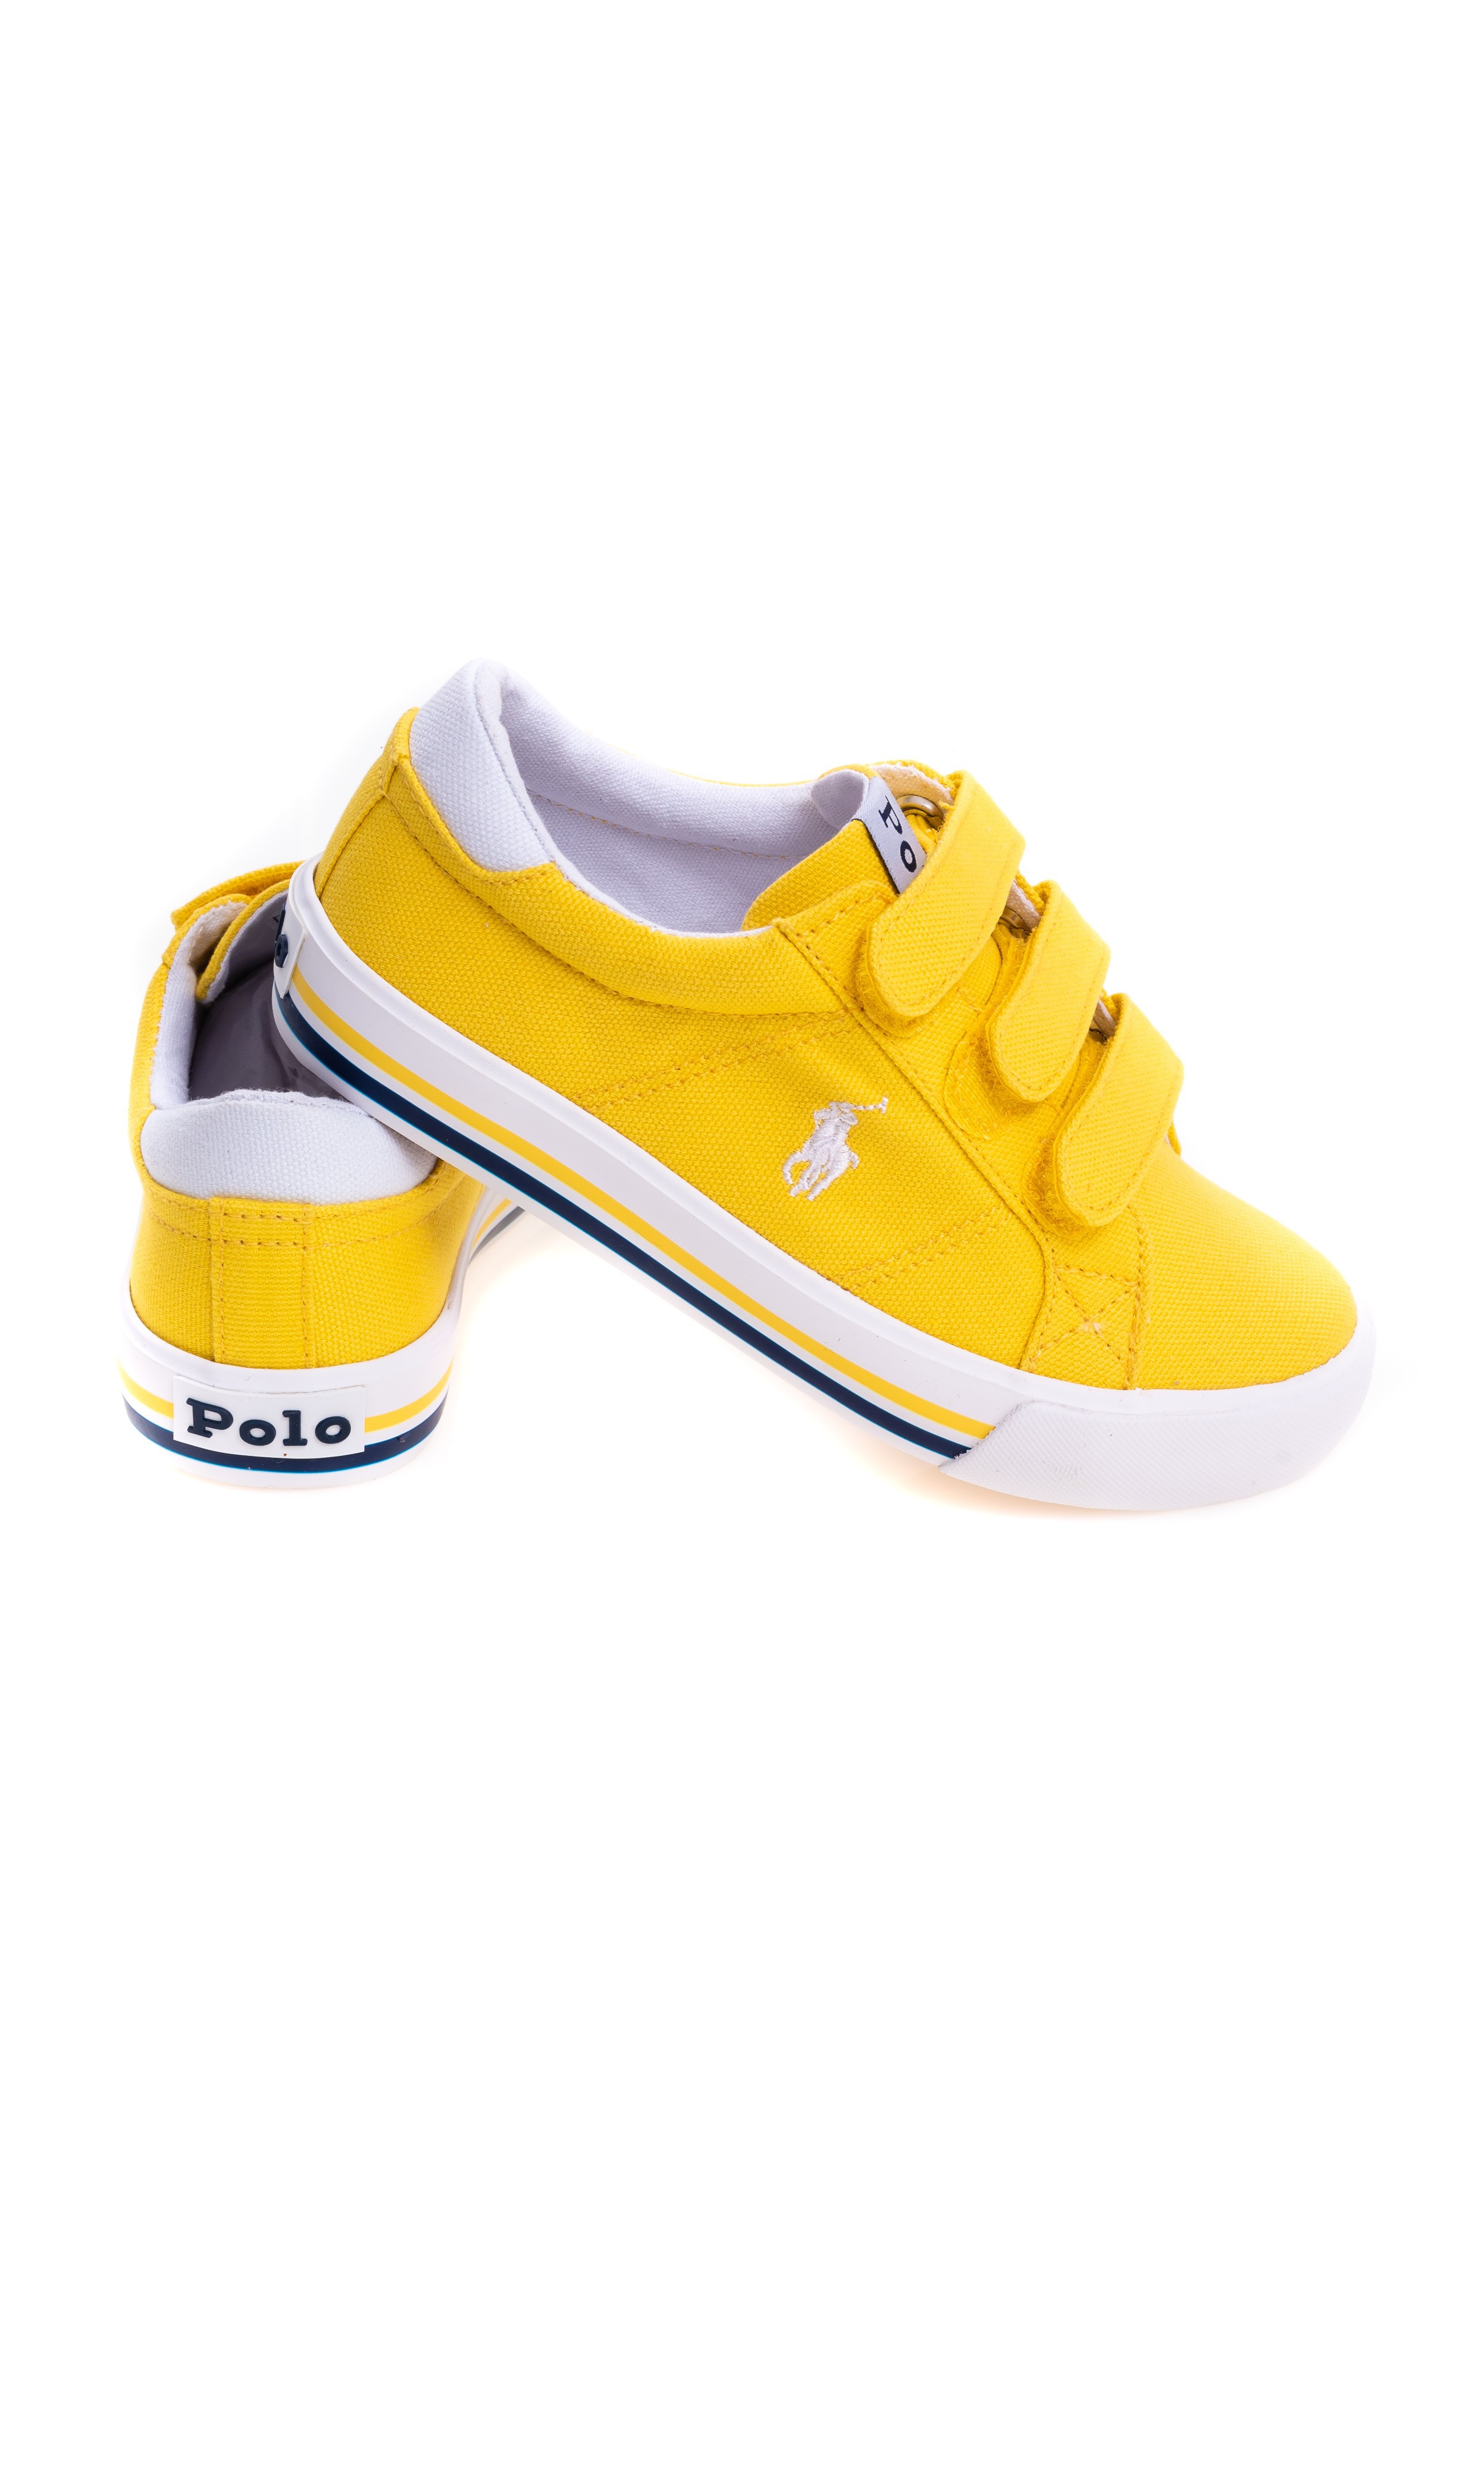 ralph lauren yellow shoes